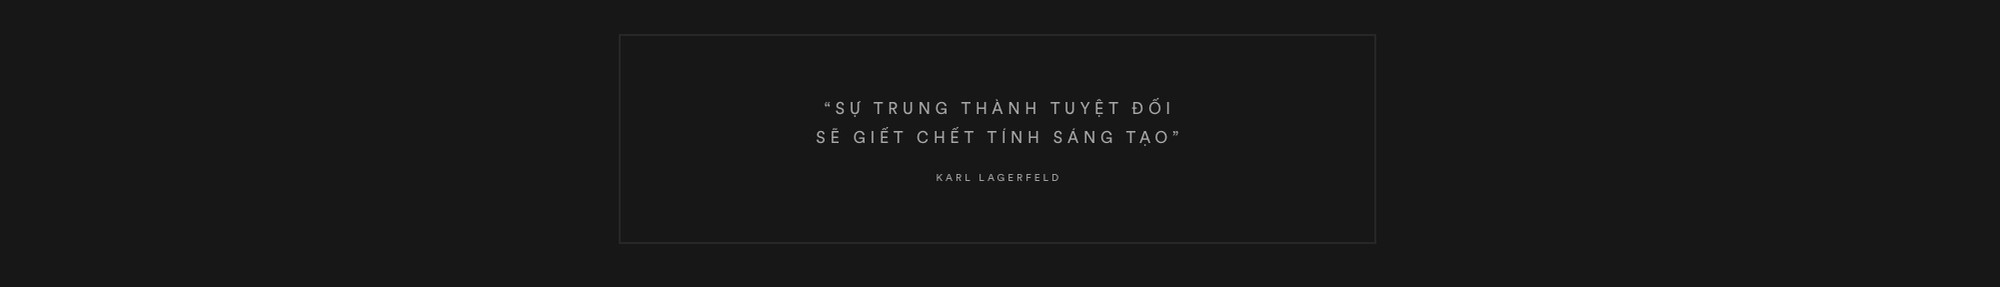 Karl Lagerfeld: 85 năm cuộc đời chỉ gắn liền với hai chữ, vài người đàn ông và một chú mèo - Ảnh 5.